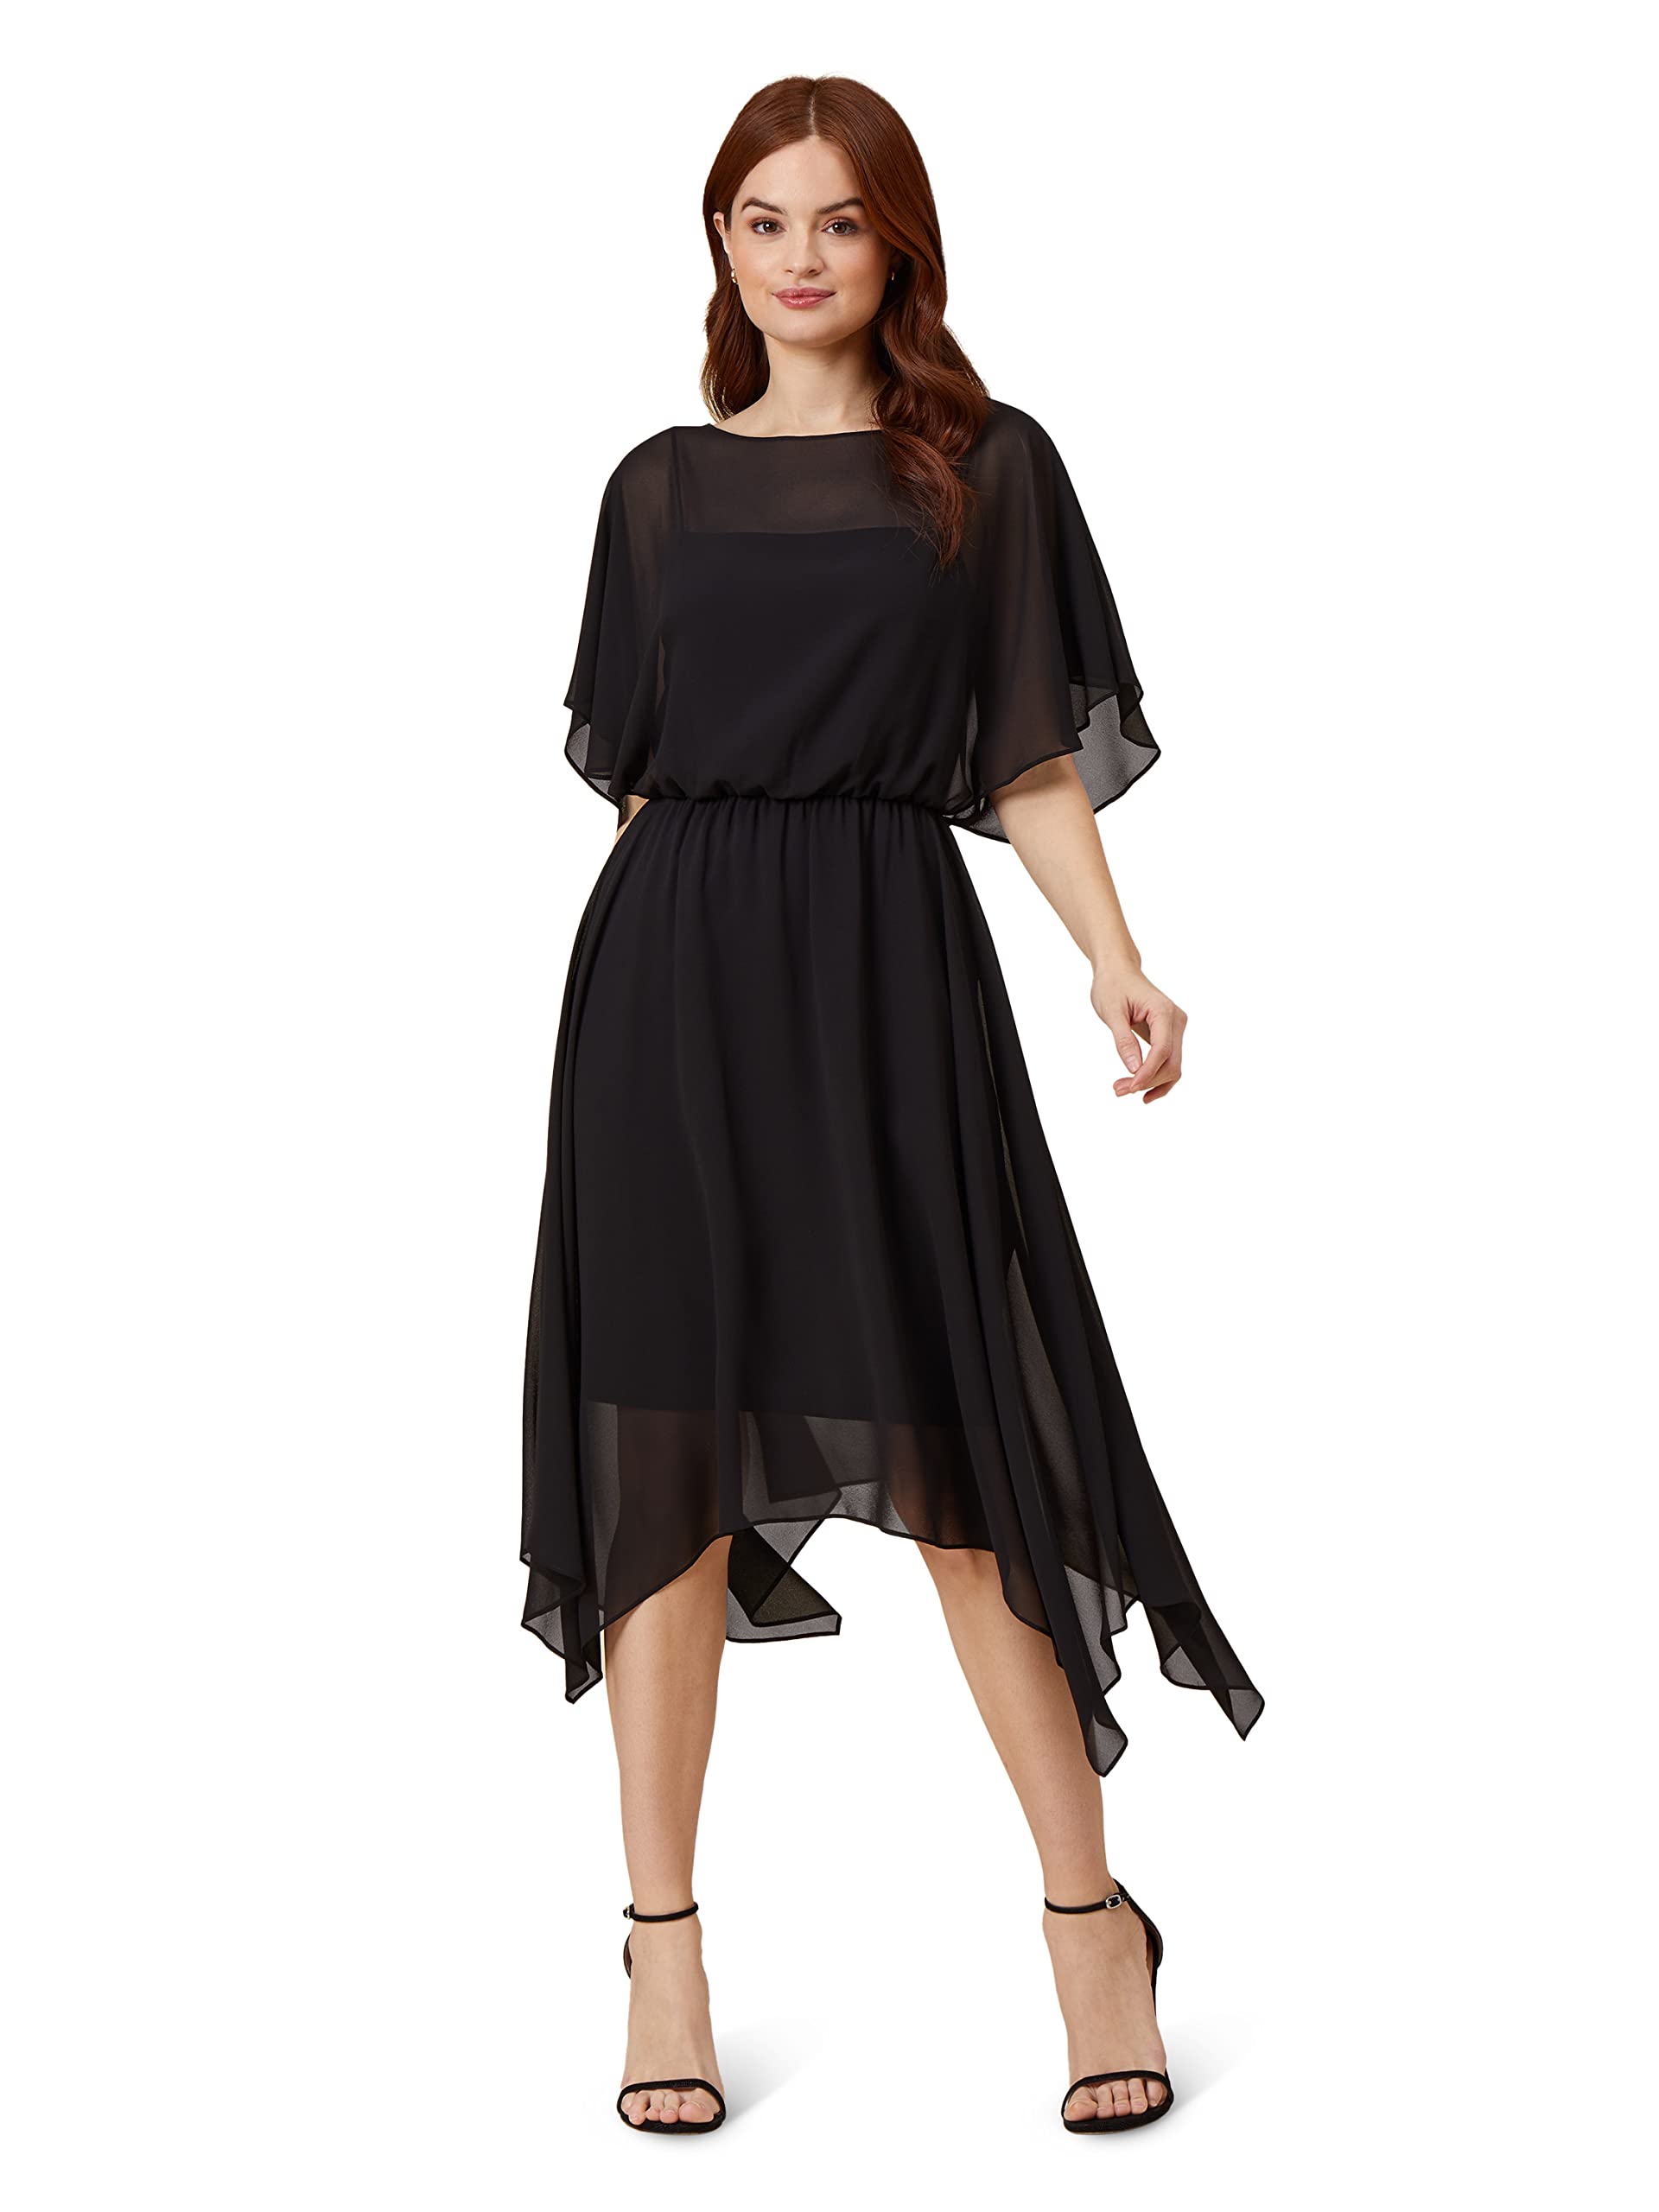 Adrianna Papell Women's Chiffon & Jersey Blouson Dress